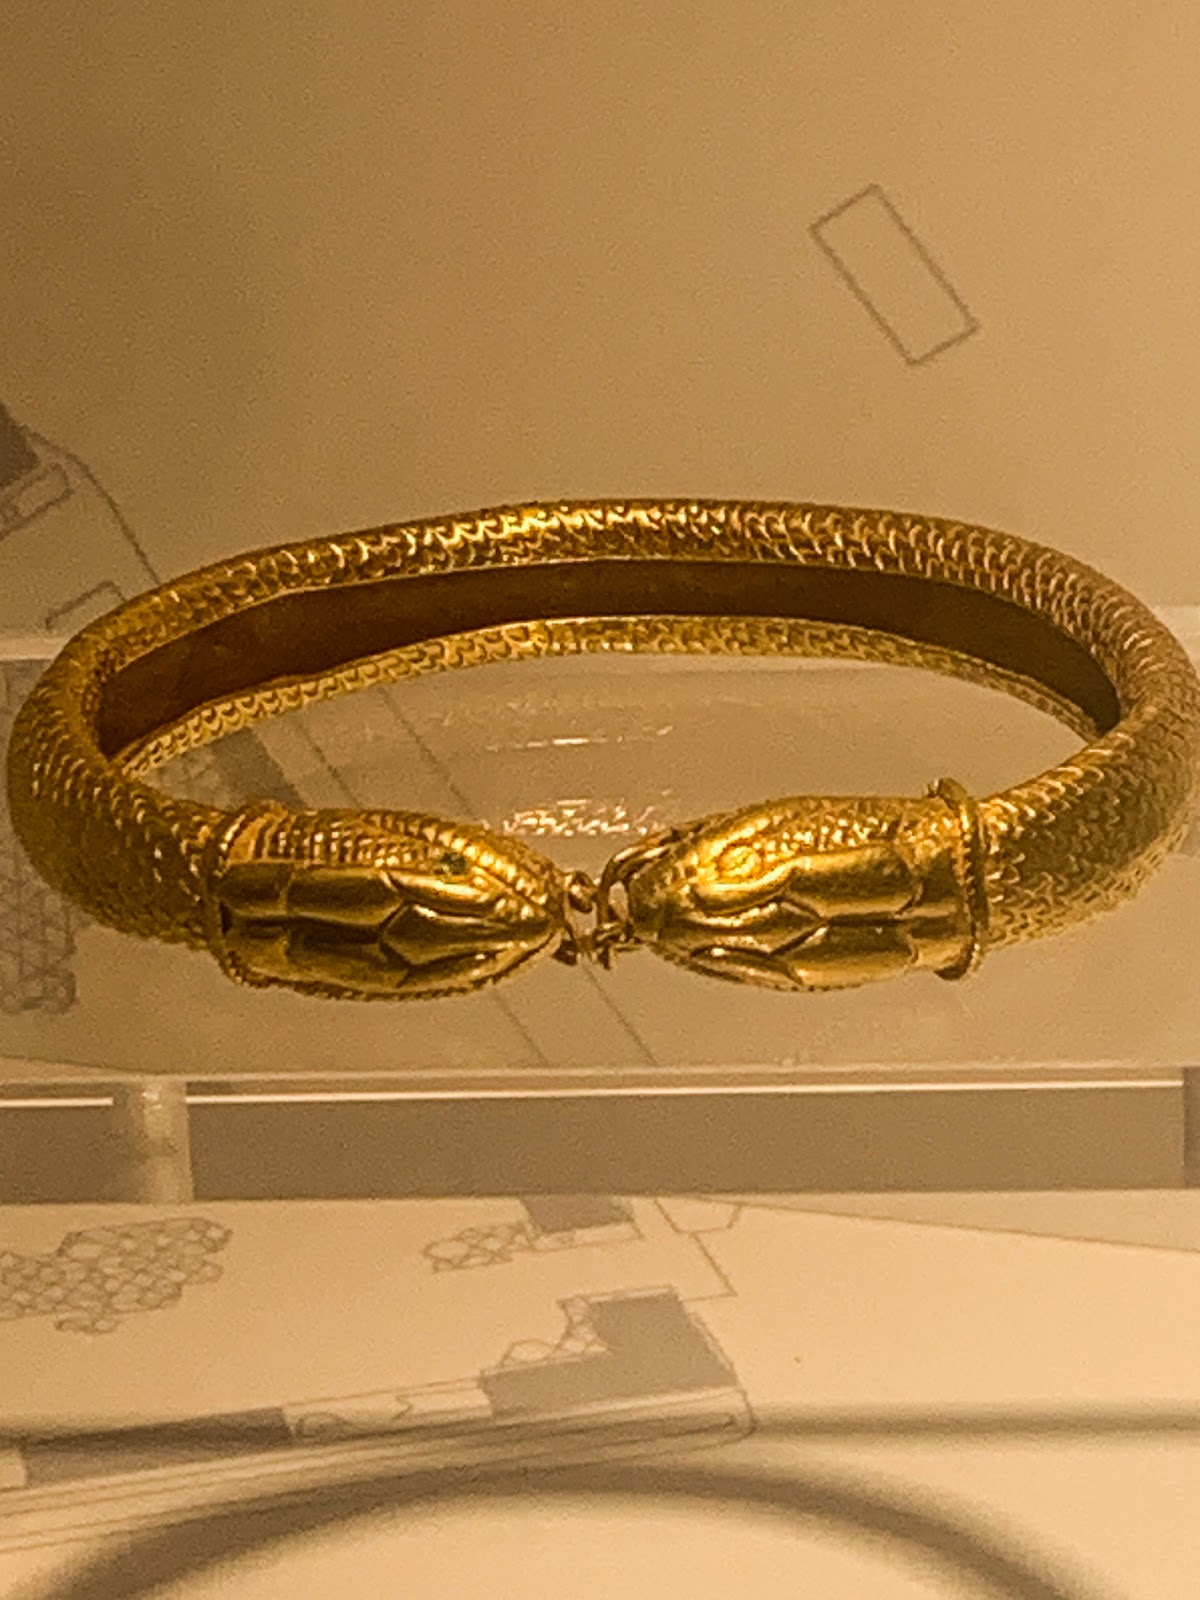 Snake bracelet